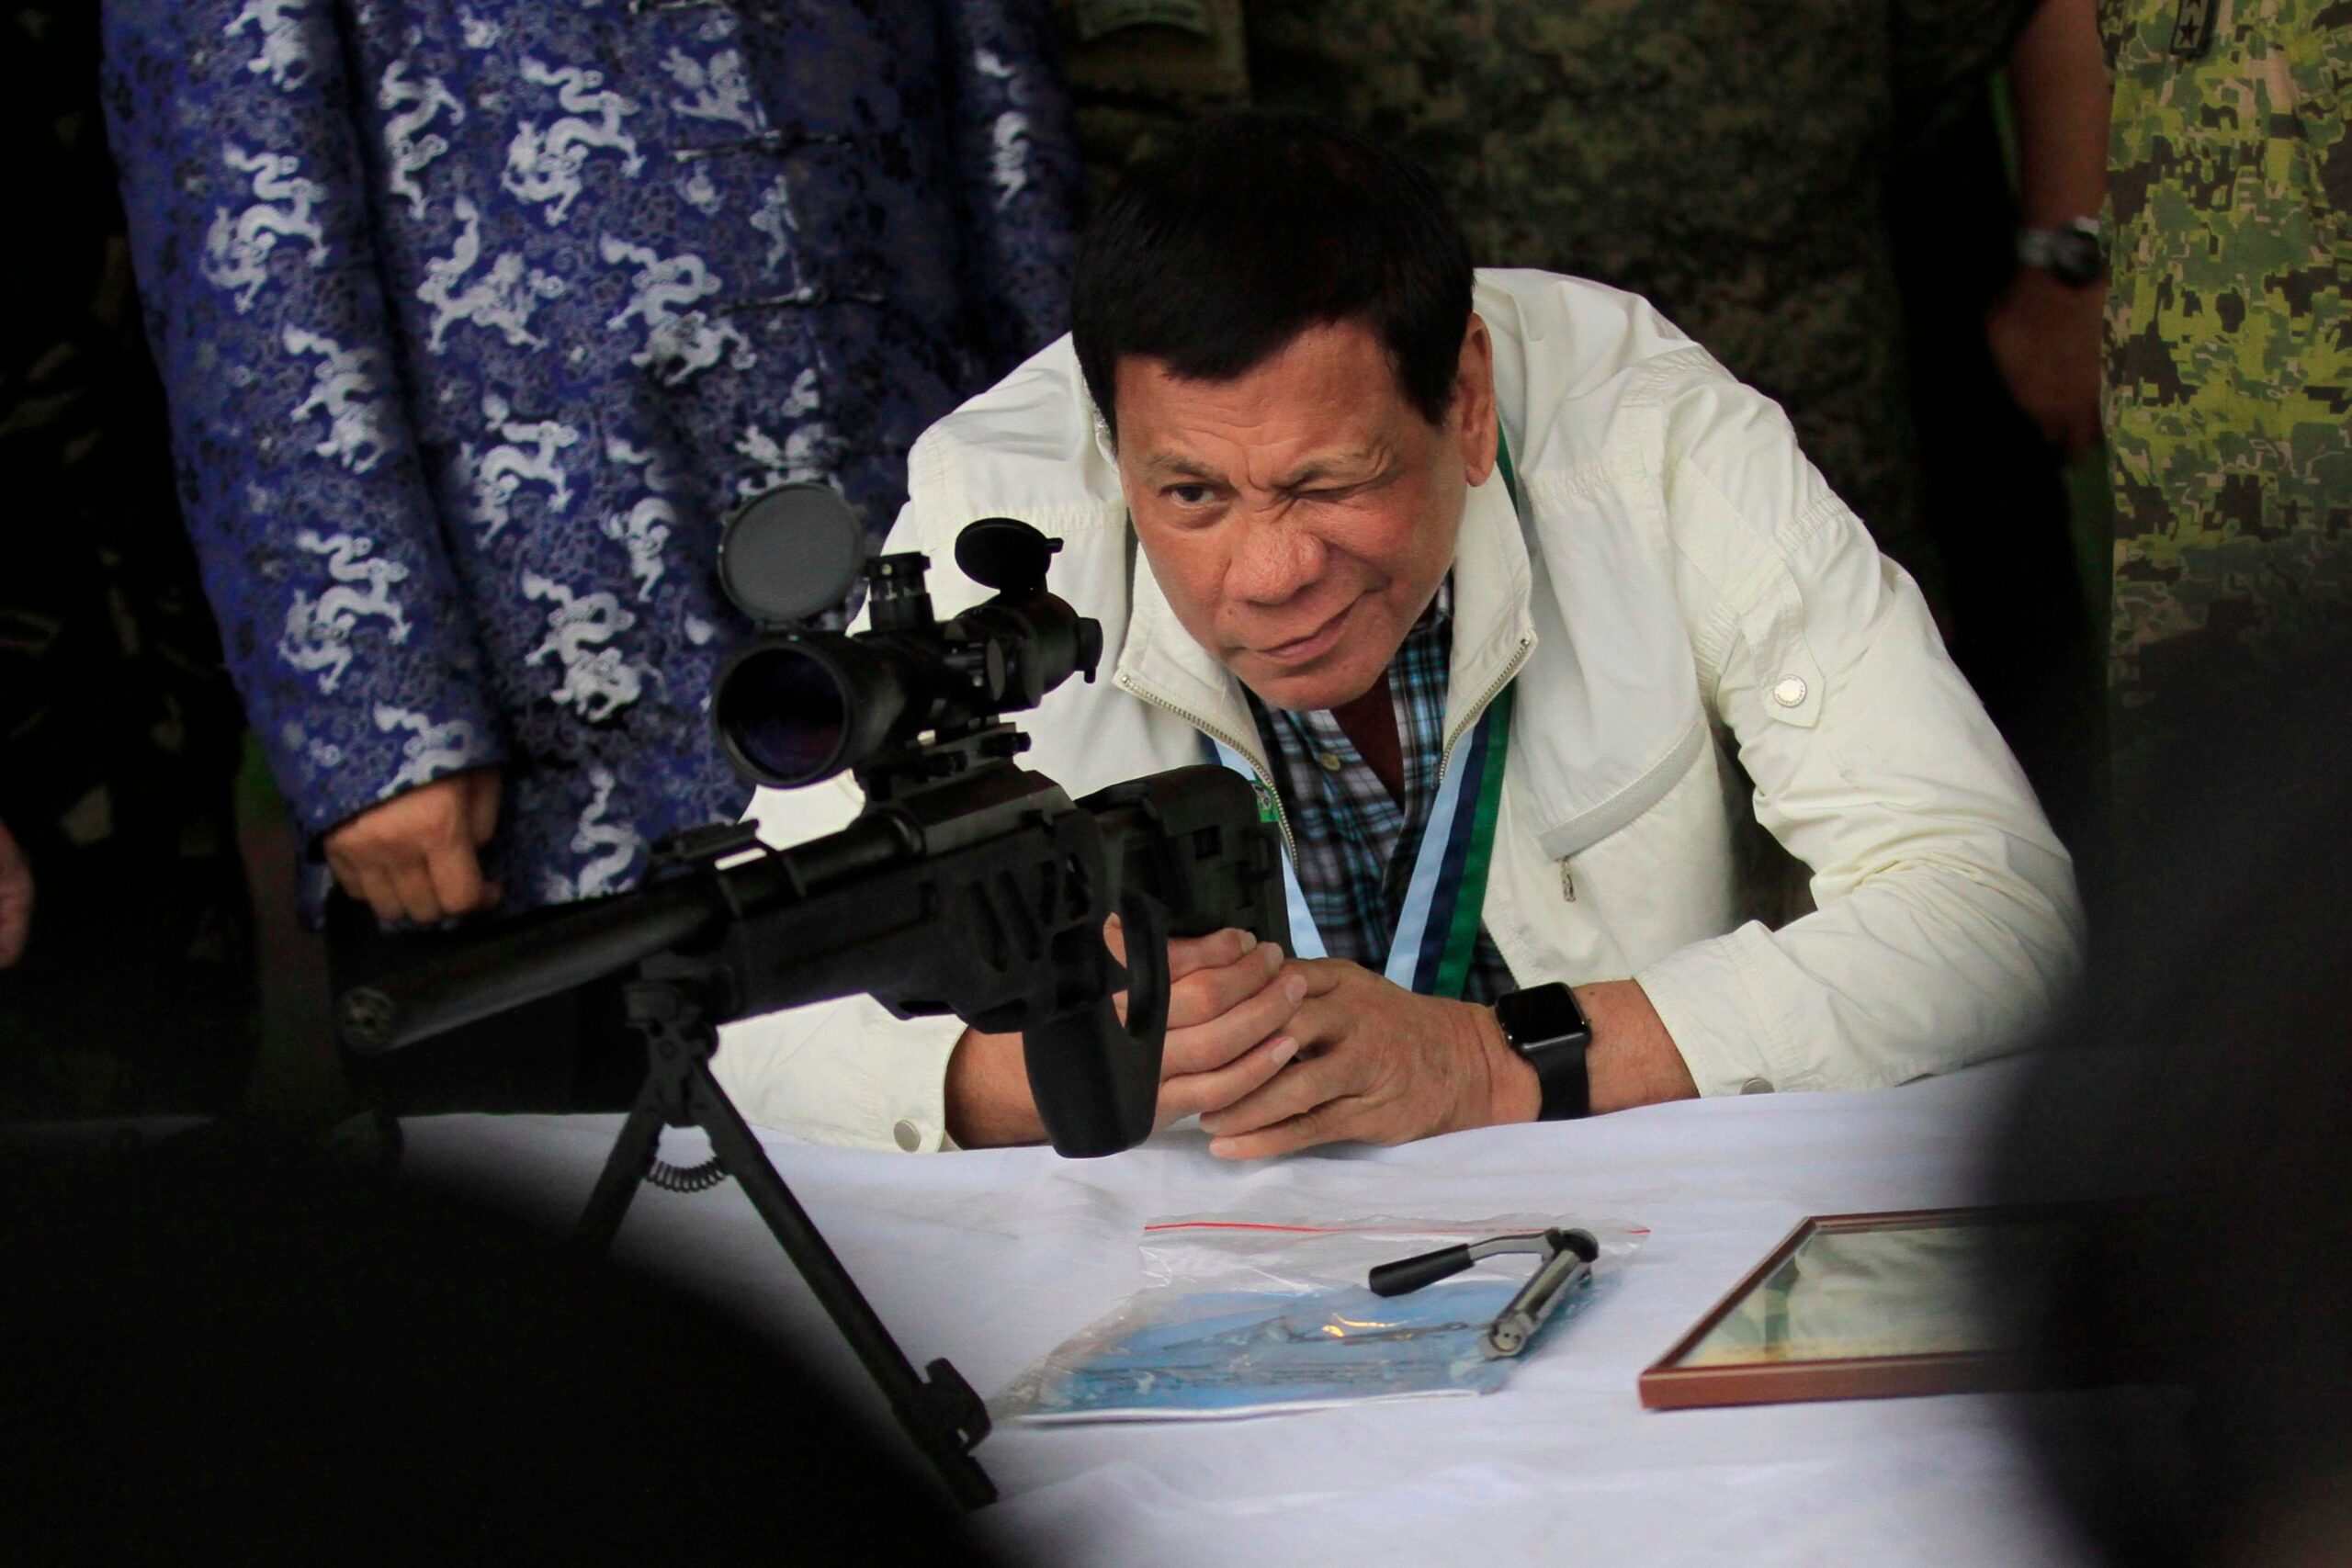 TRANSCRIPT: ‘Pag walang baril, bigyan mo ng baril’ – Duterte